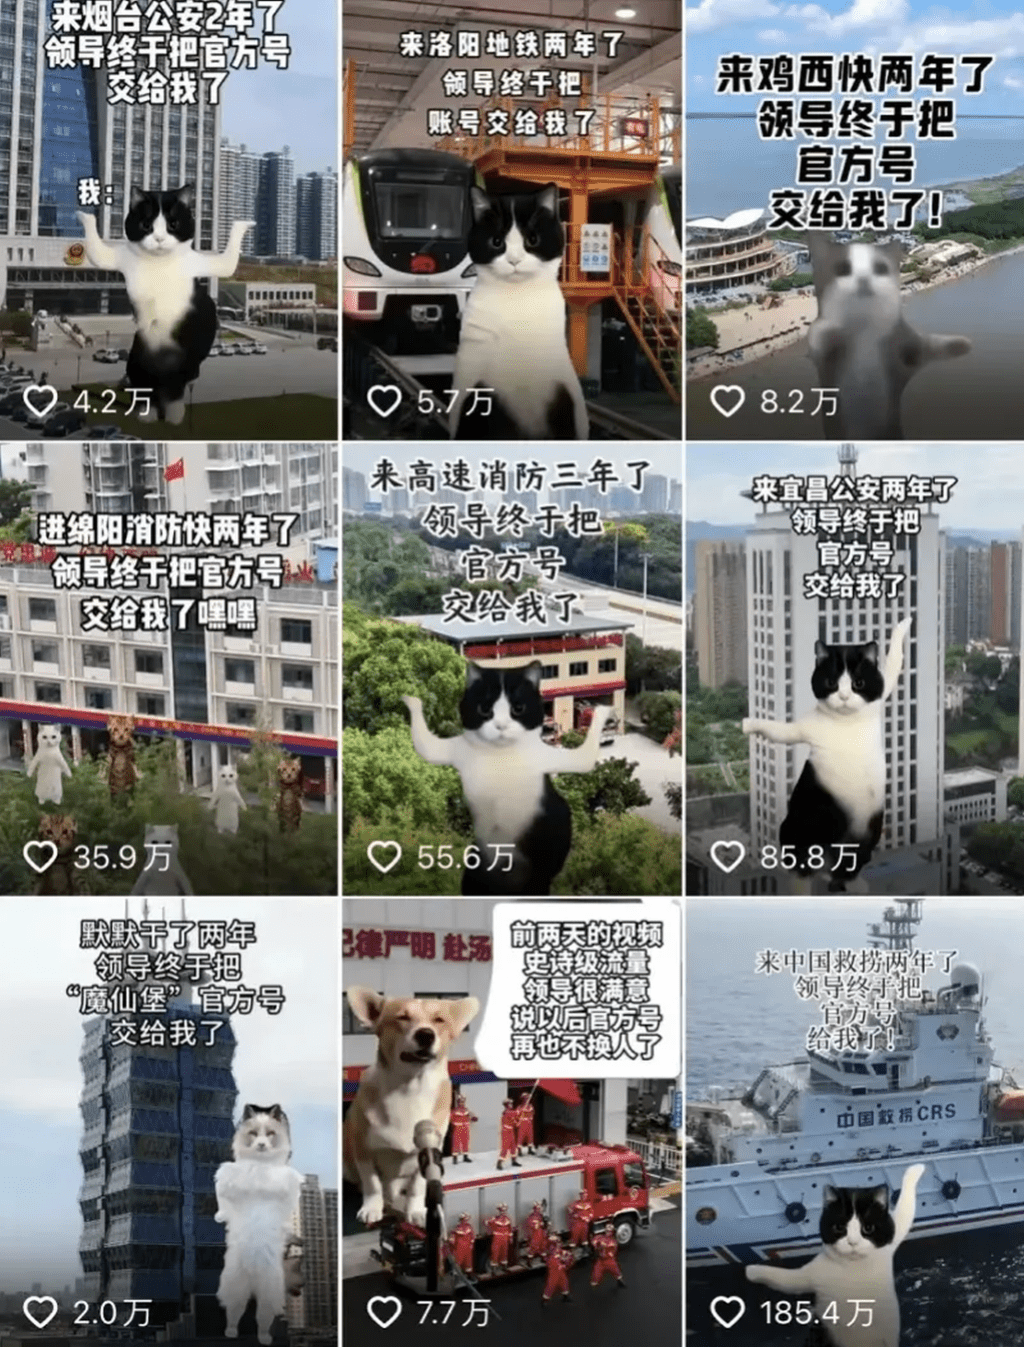 猫咪「霸屏」政务新媒体火遍全网。